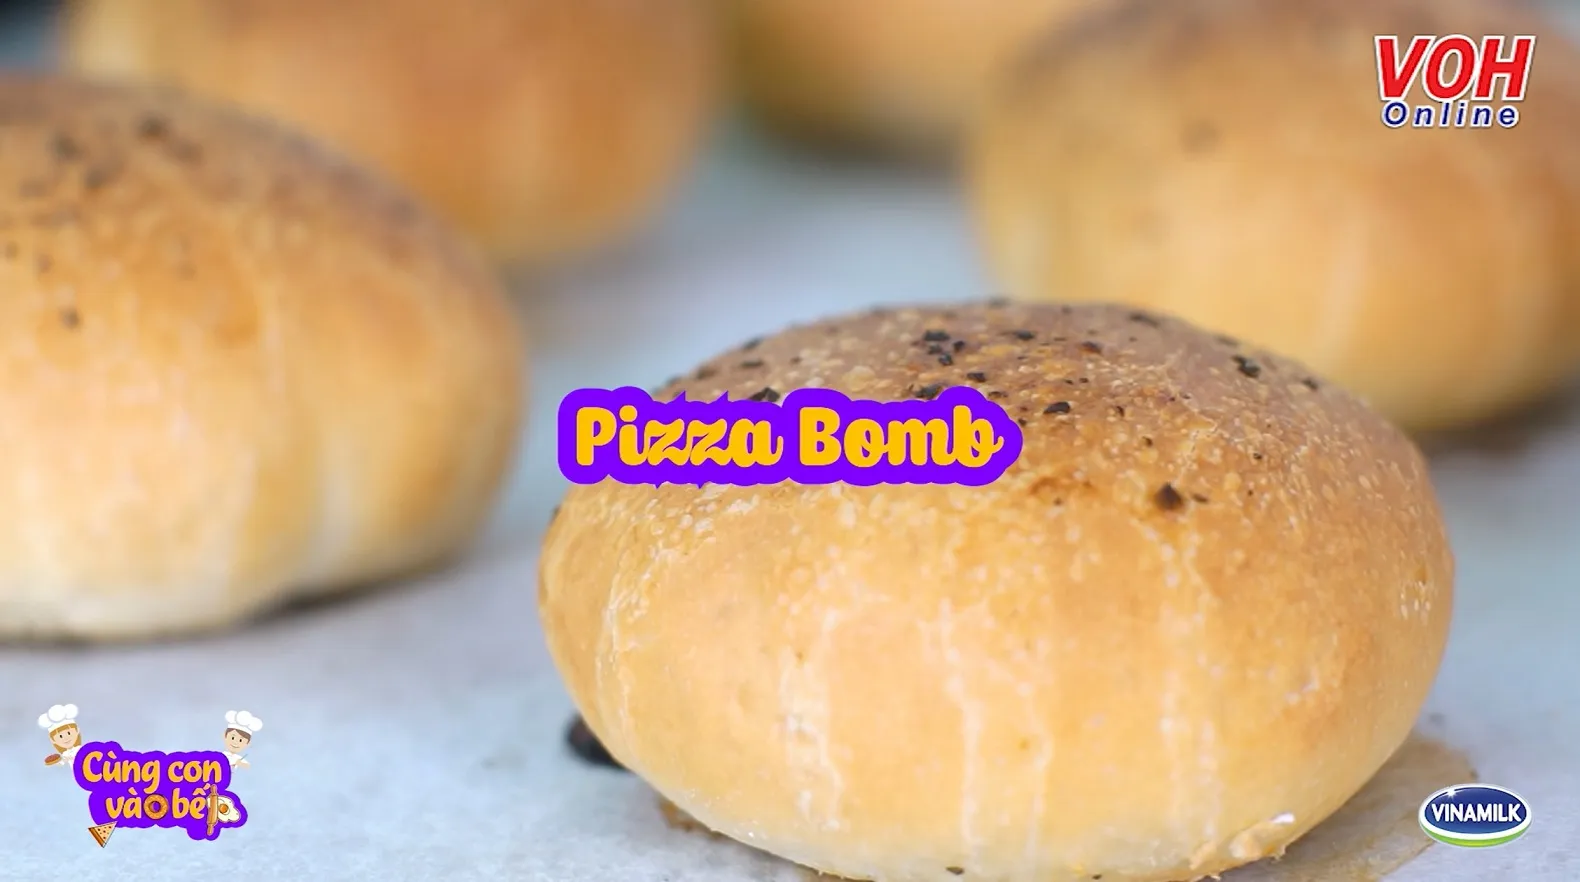 Cùng con vào bếp (Số 46): Pizza bomb - biến tấu mới lạ cho bé